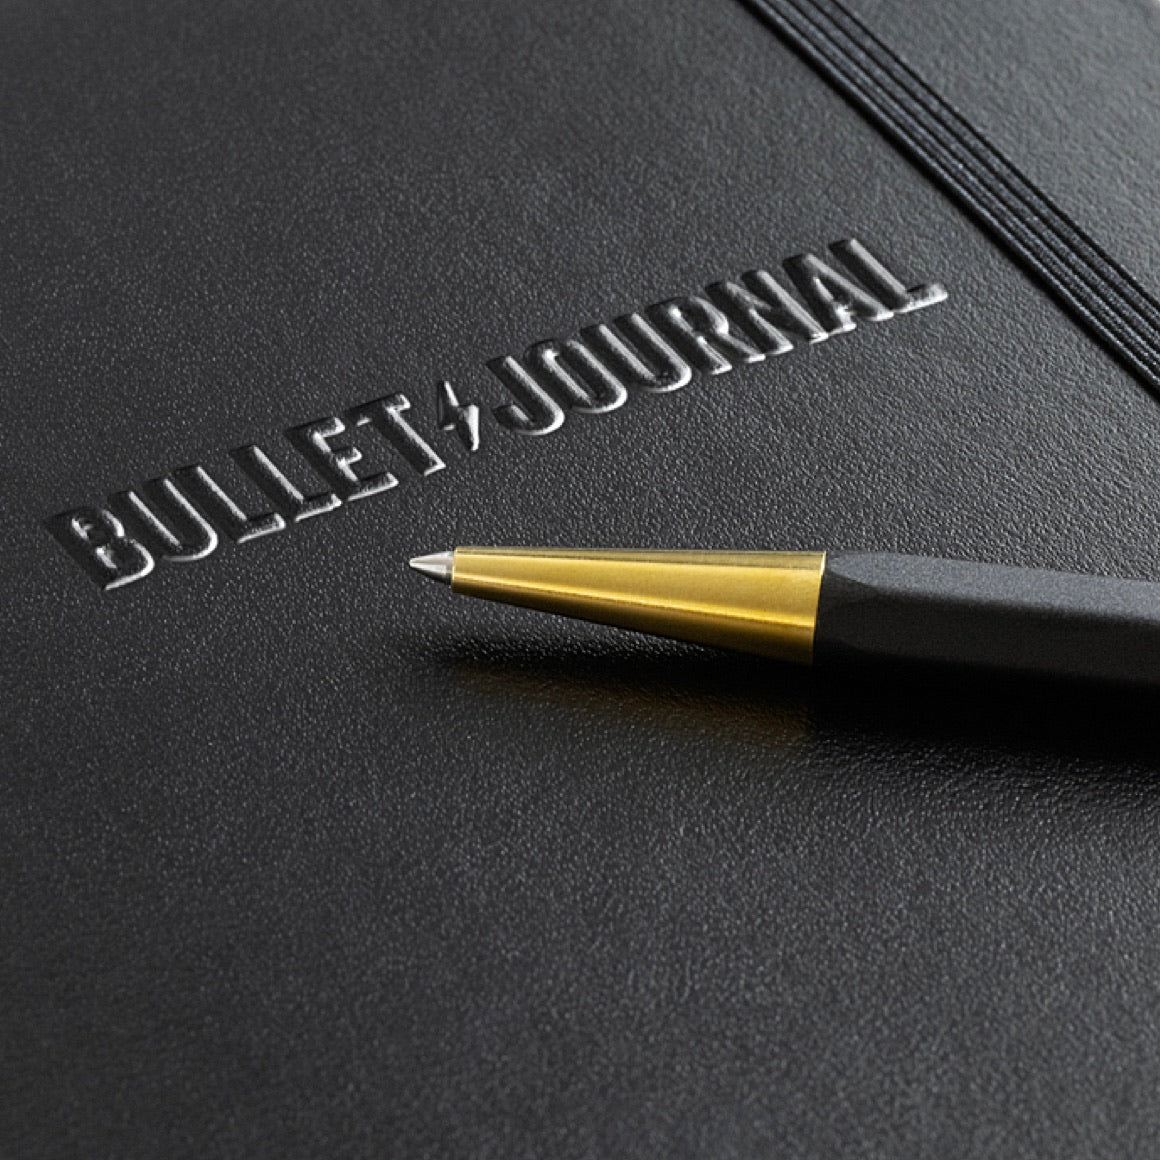 The Pen Ink Refill - Black - Bullet Journal